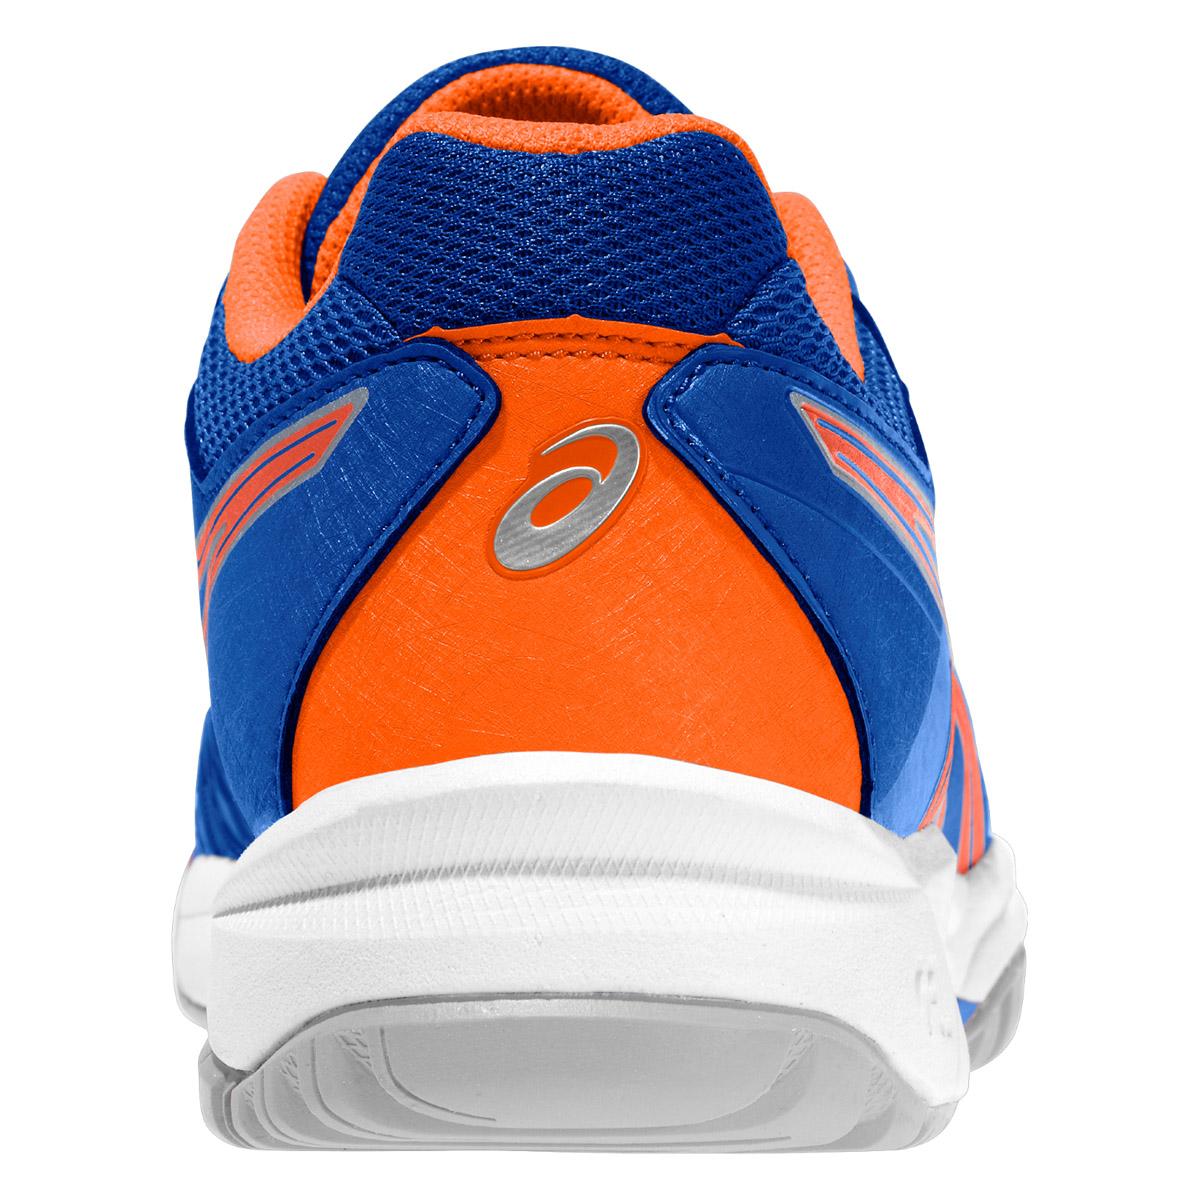 asics blue and orange shoes